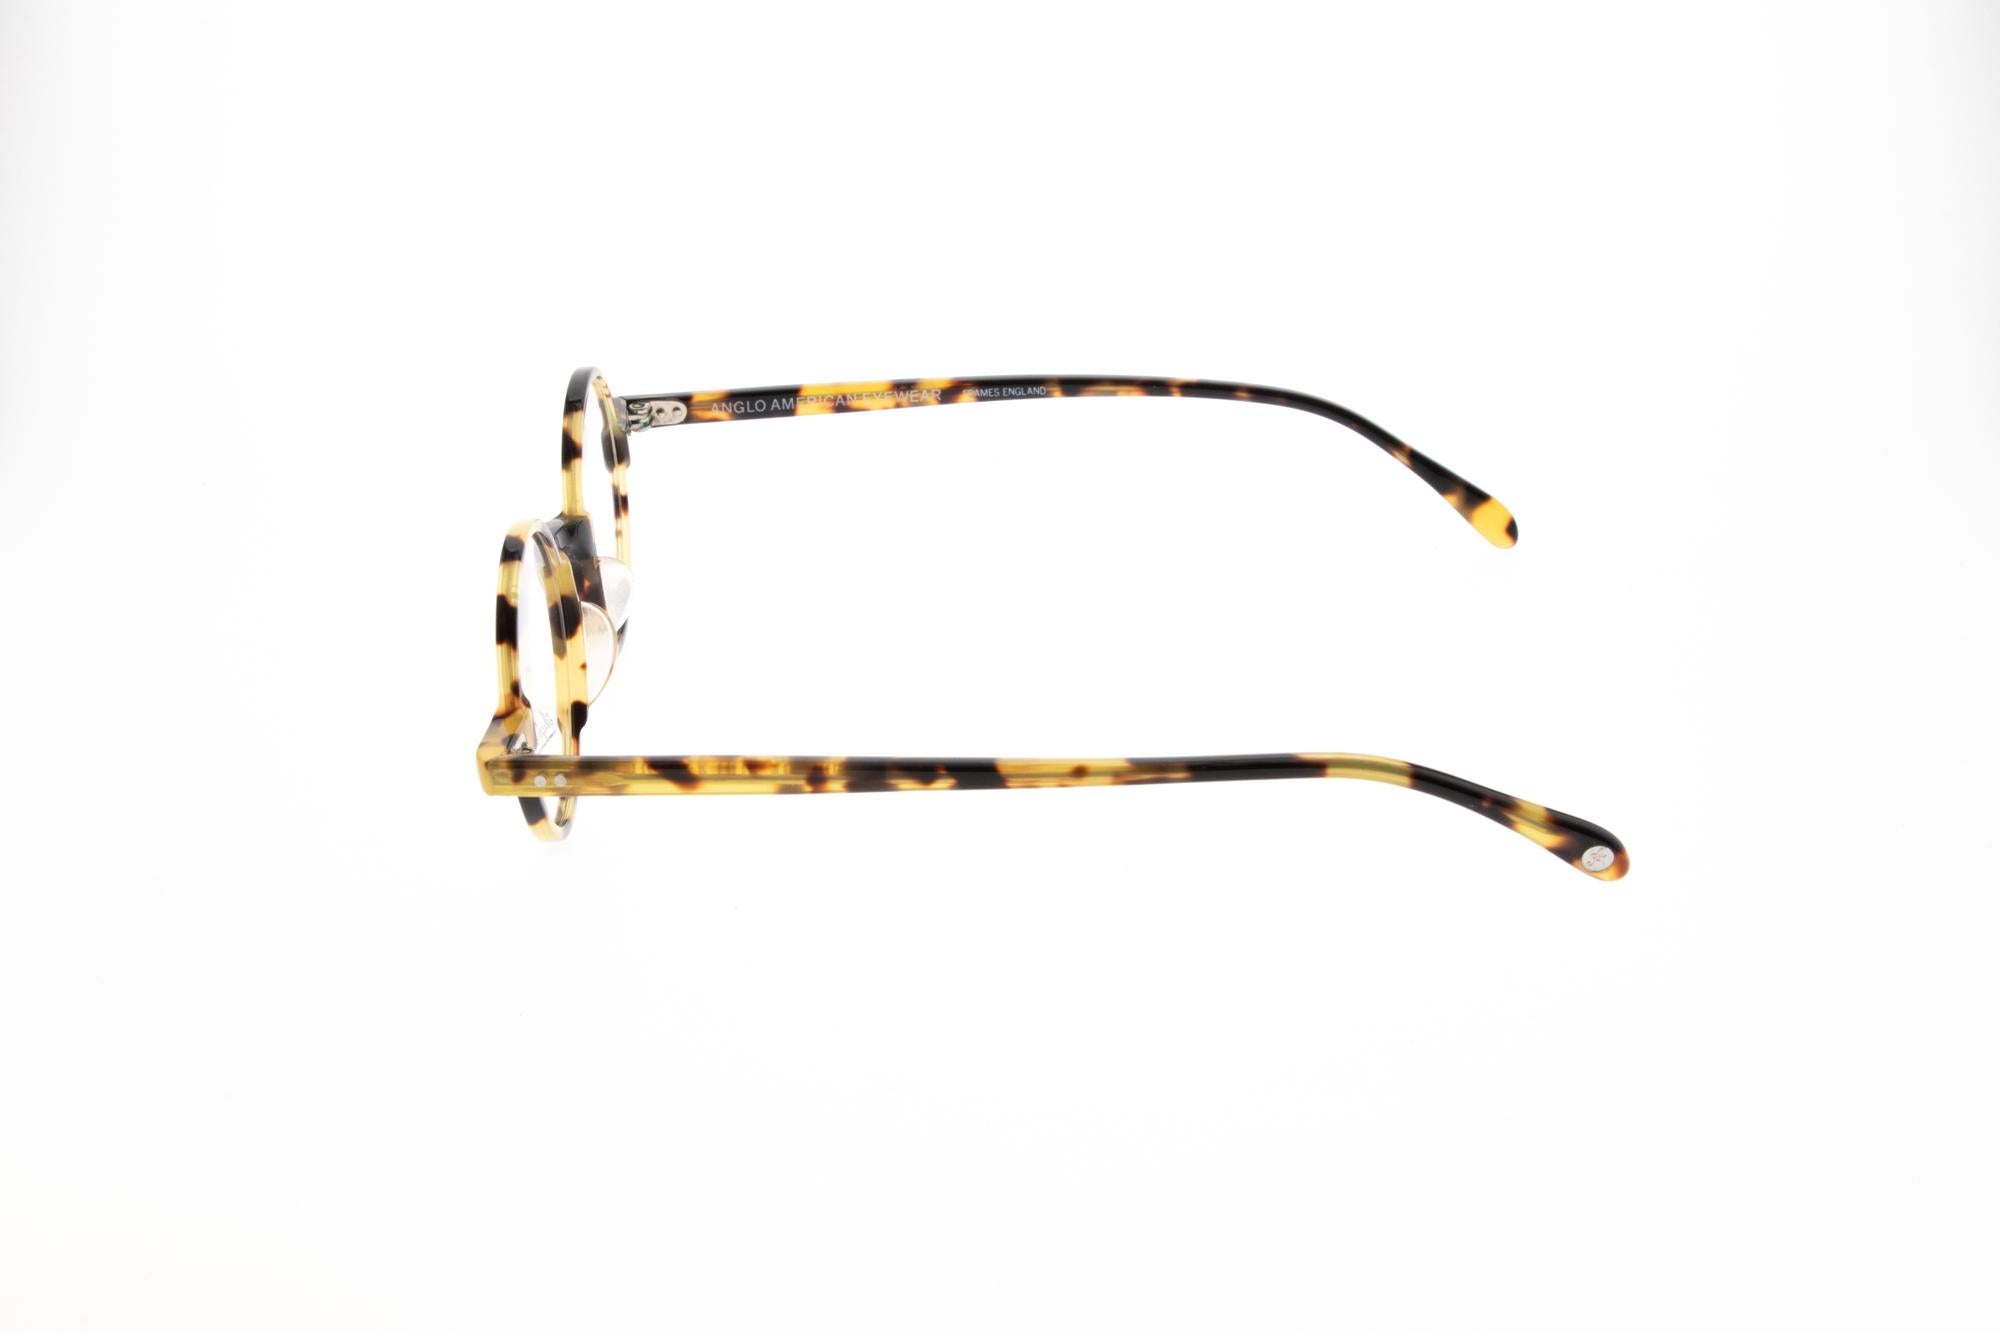 Das Modell AIRLITE wird von Anglo American Eyewear hergestellt. Das Unternehmen wurde 1993 zum besten Designer von Sonnenbrillen und Brillengestellen gewählt. Alle Gläser werden in Handarbeit aus den besten MATERIALEN hergestellt. Diese hochwertigen